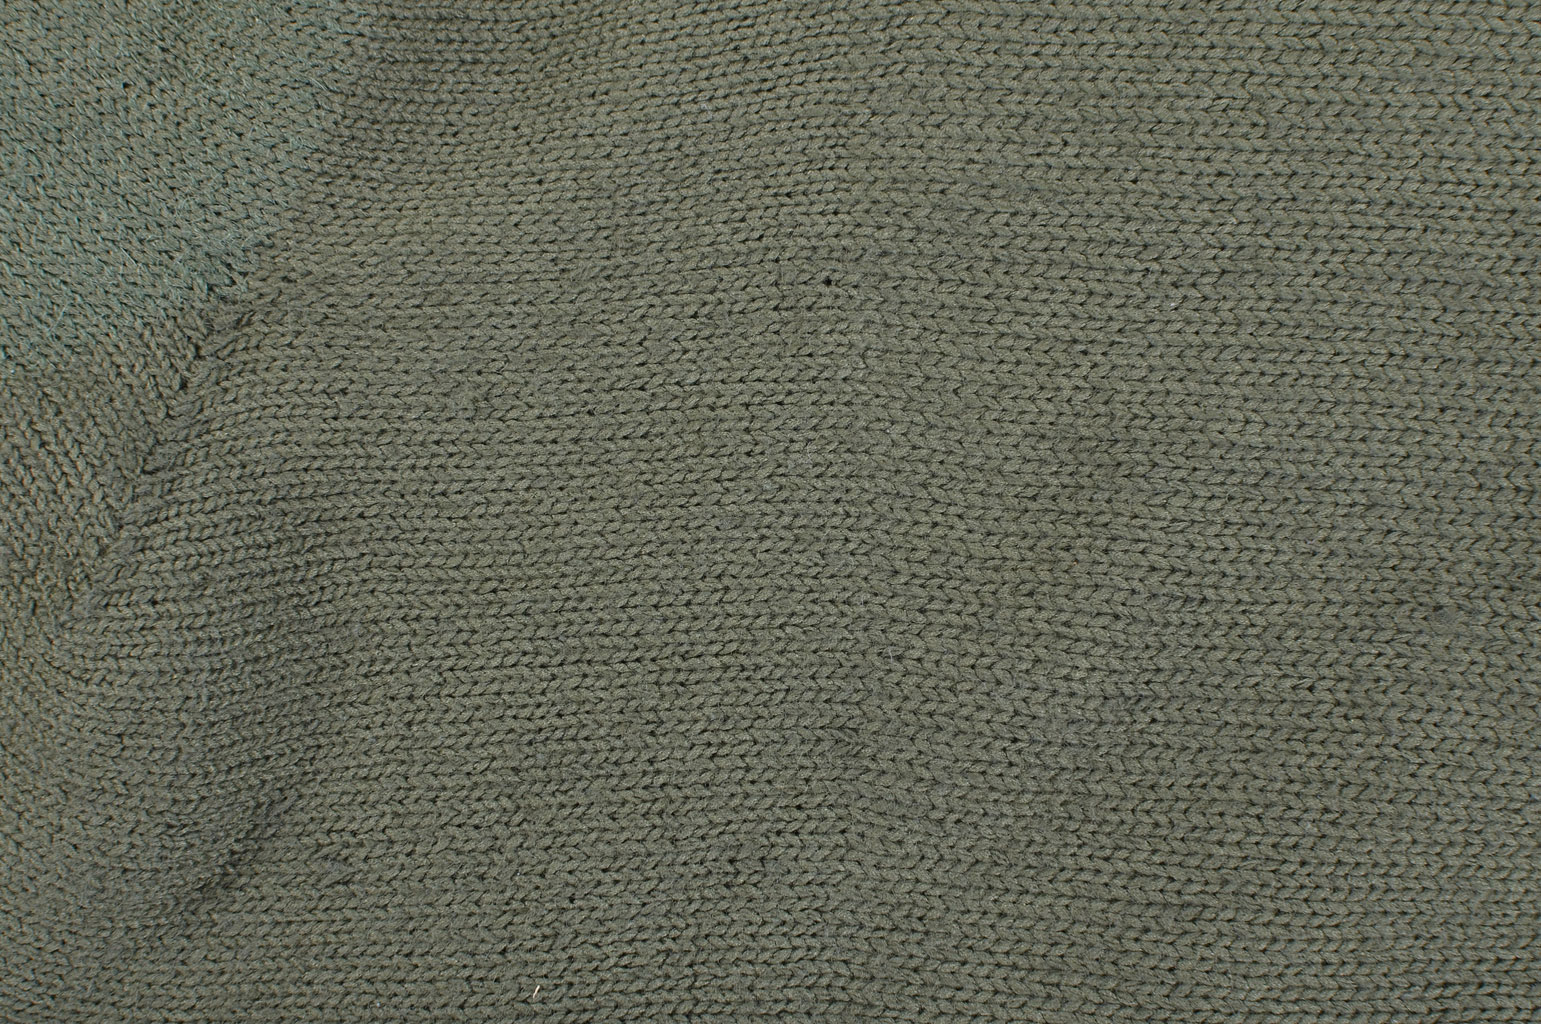 Носки армейские шерсть/хлопок olive США